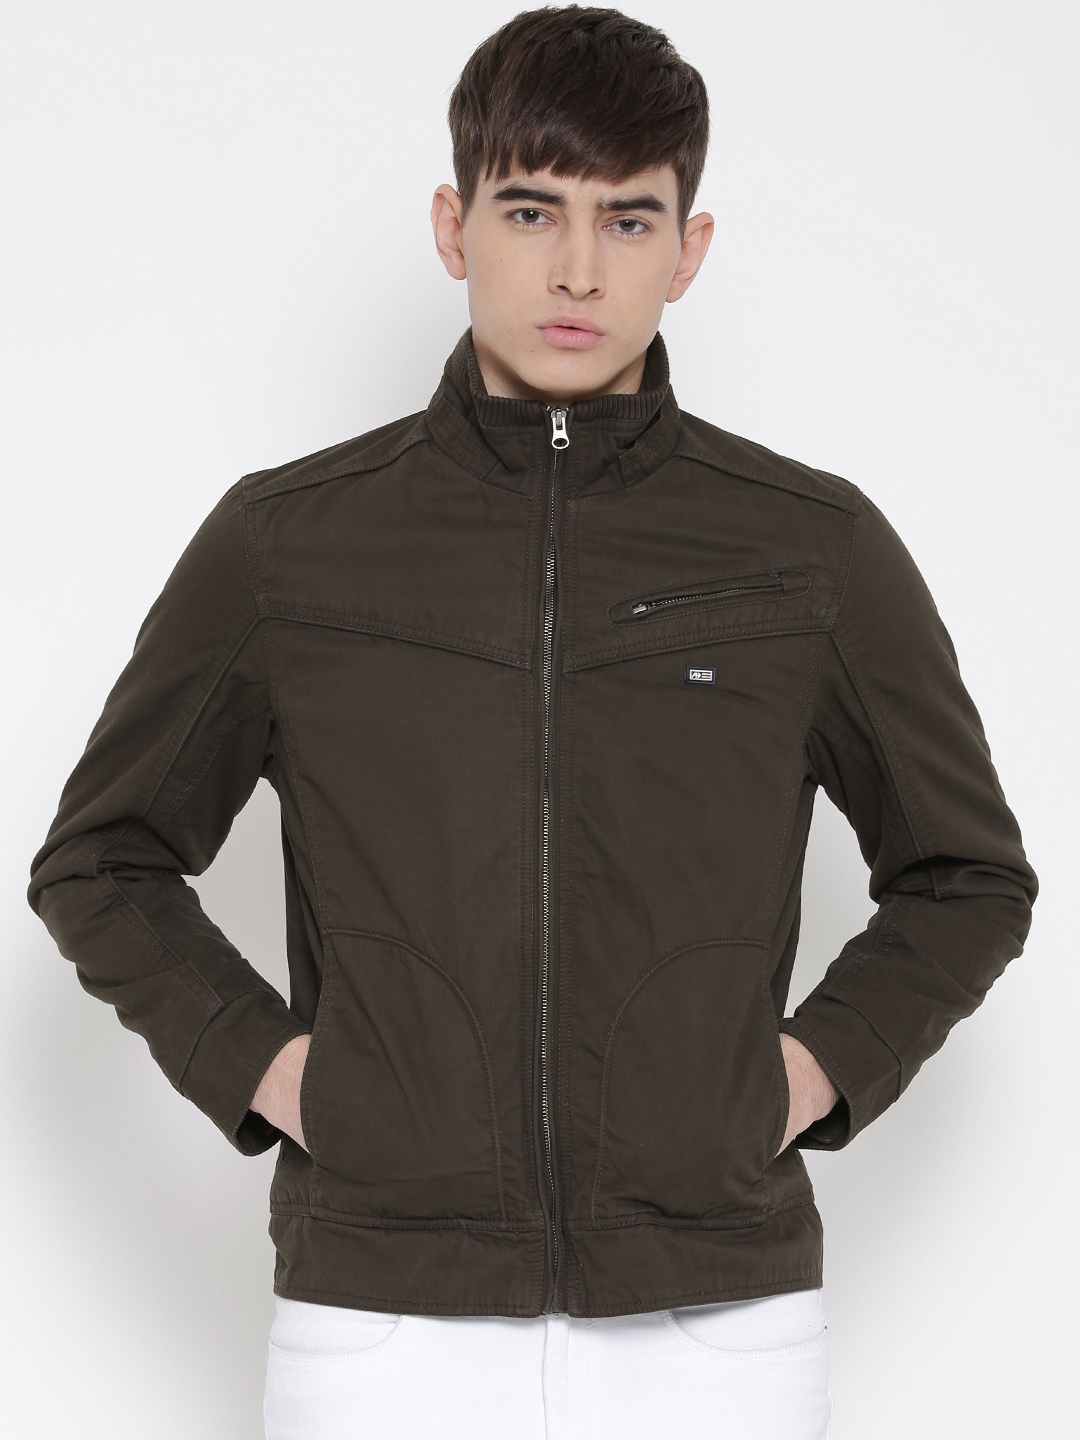 Buy Arrow Sport Brown Jacket - Jackets for Men 1050927 | Myntra